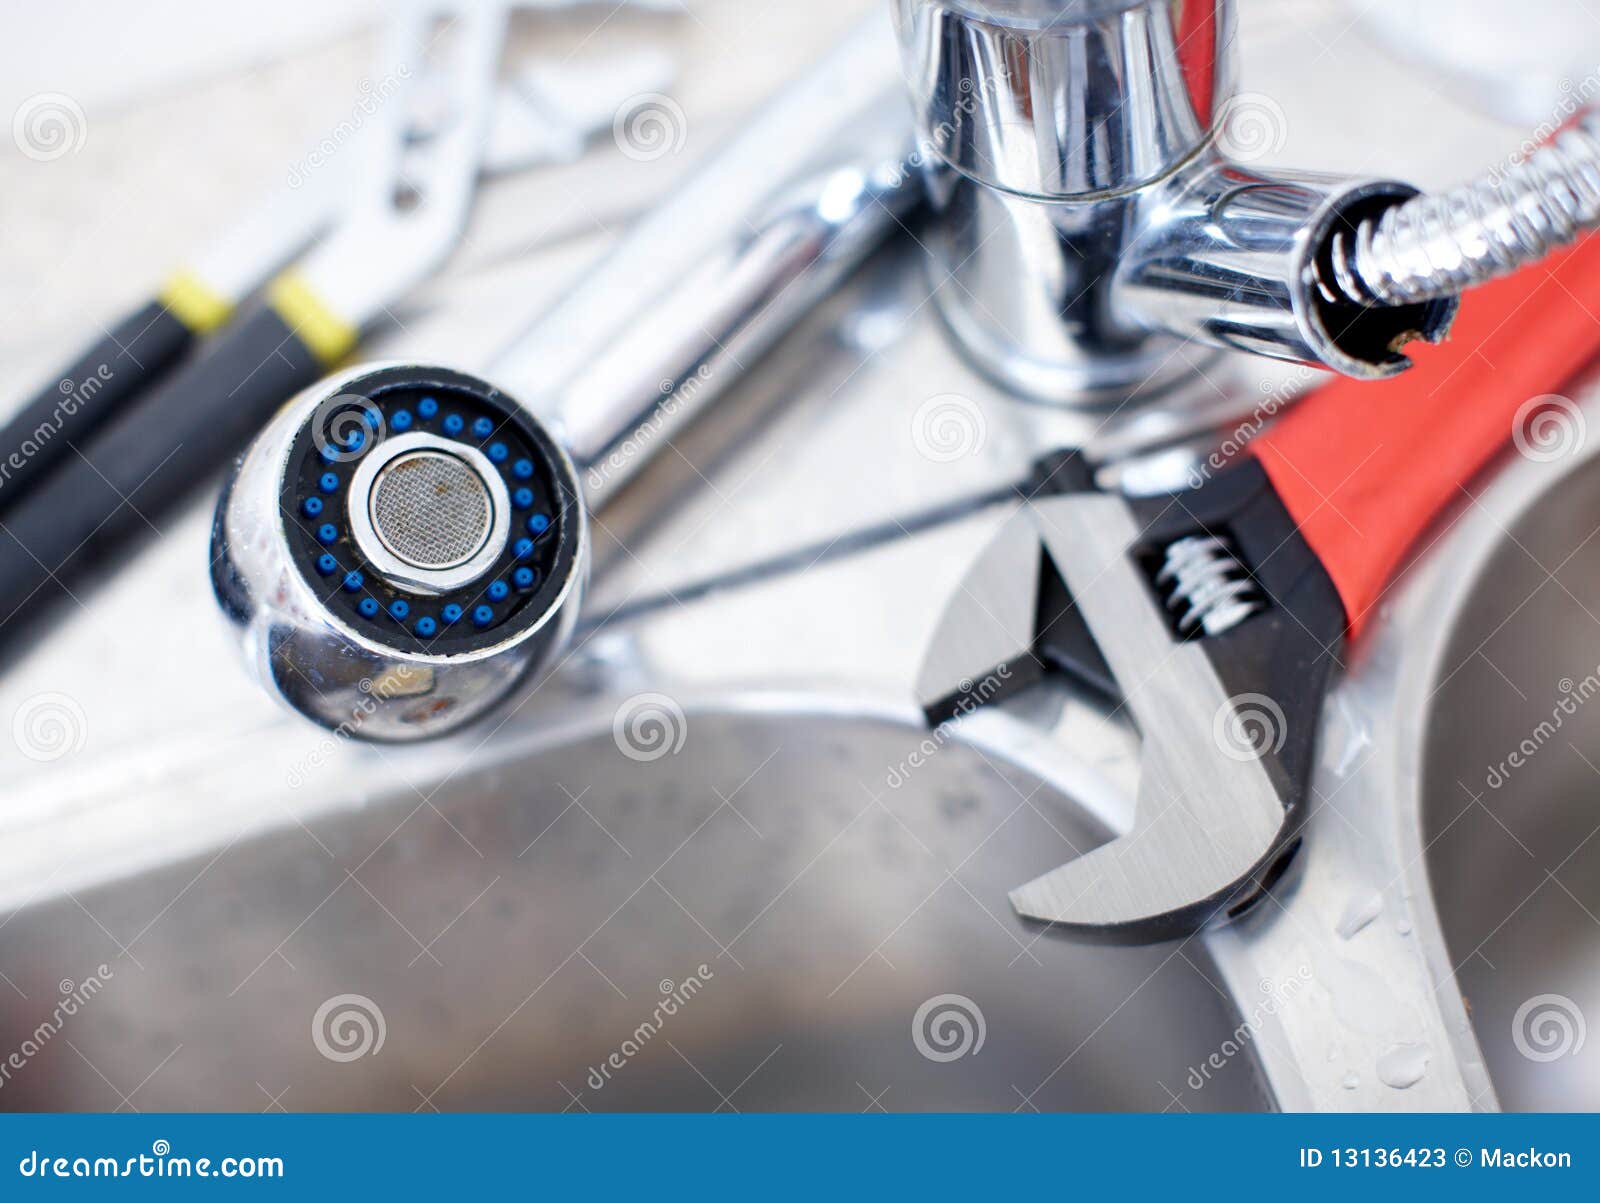 kitchen sink spanner wrench